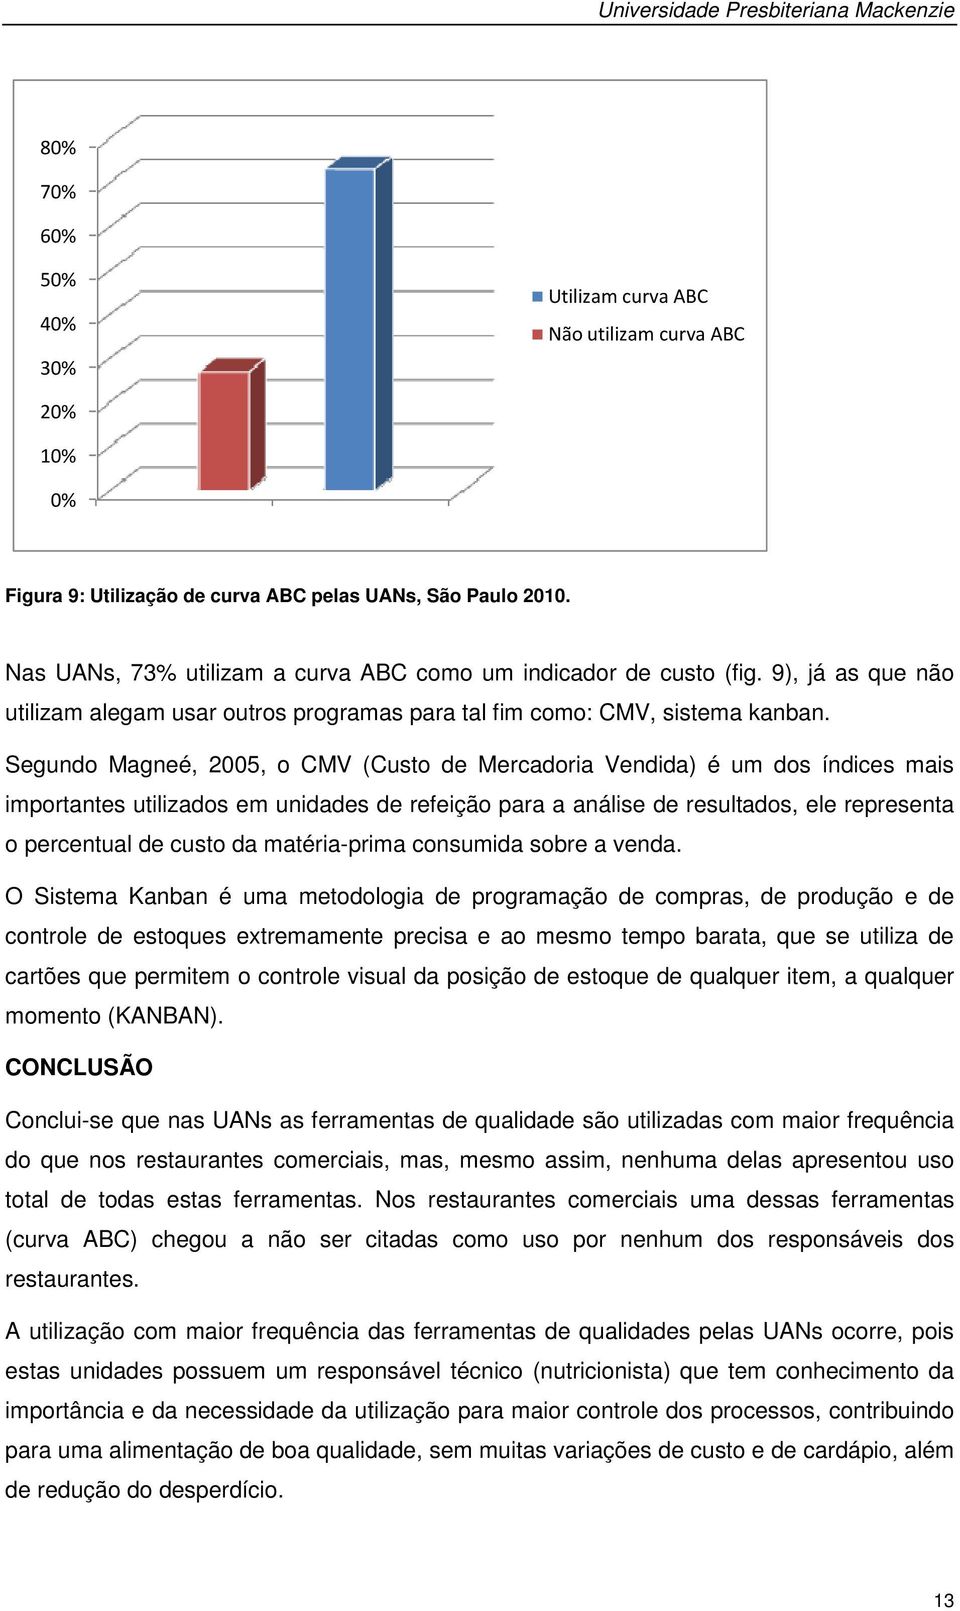 Segundo Magneé, 2005, o CMV (Custo de Mercadoria Vendida) é um dos índices mais importantes utilizados em unidades de refeição para a análise de resultados, ele representa o percentual de custo da